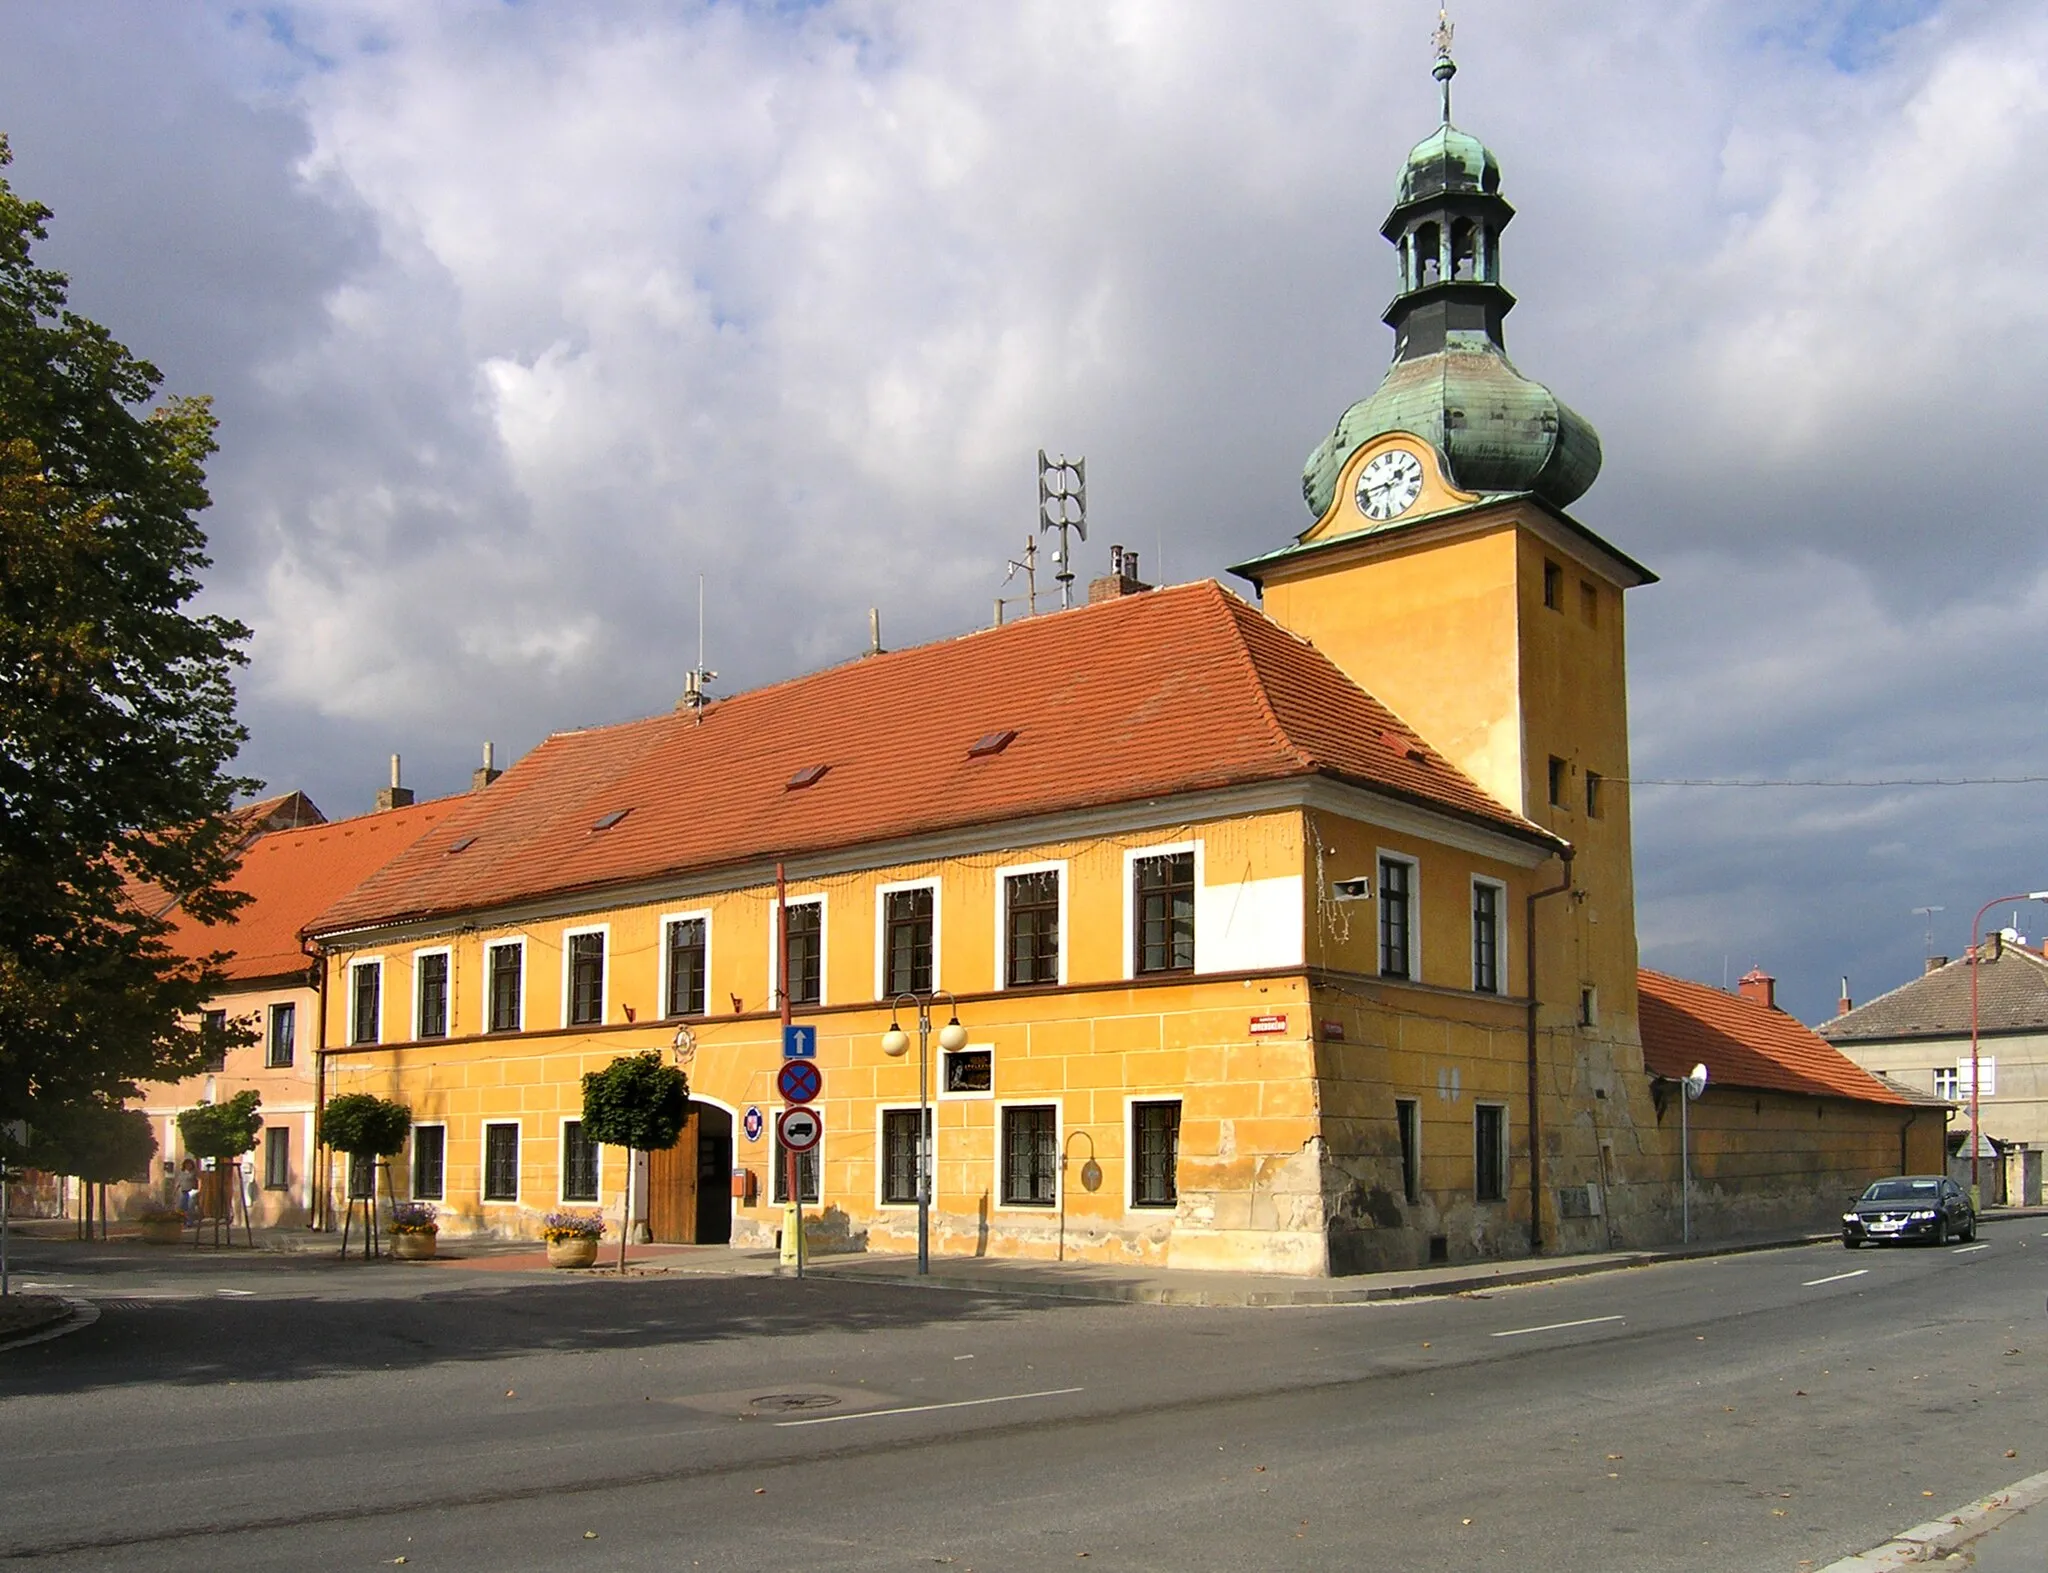 Zdjęcie: Střední Čechy